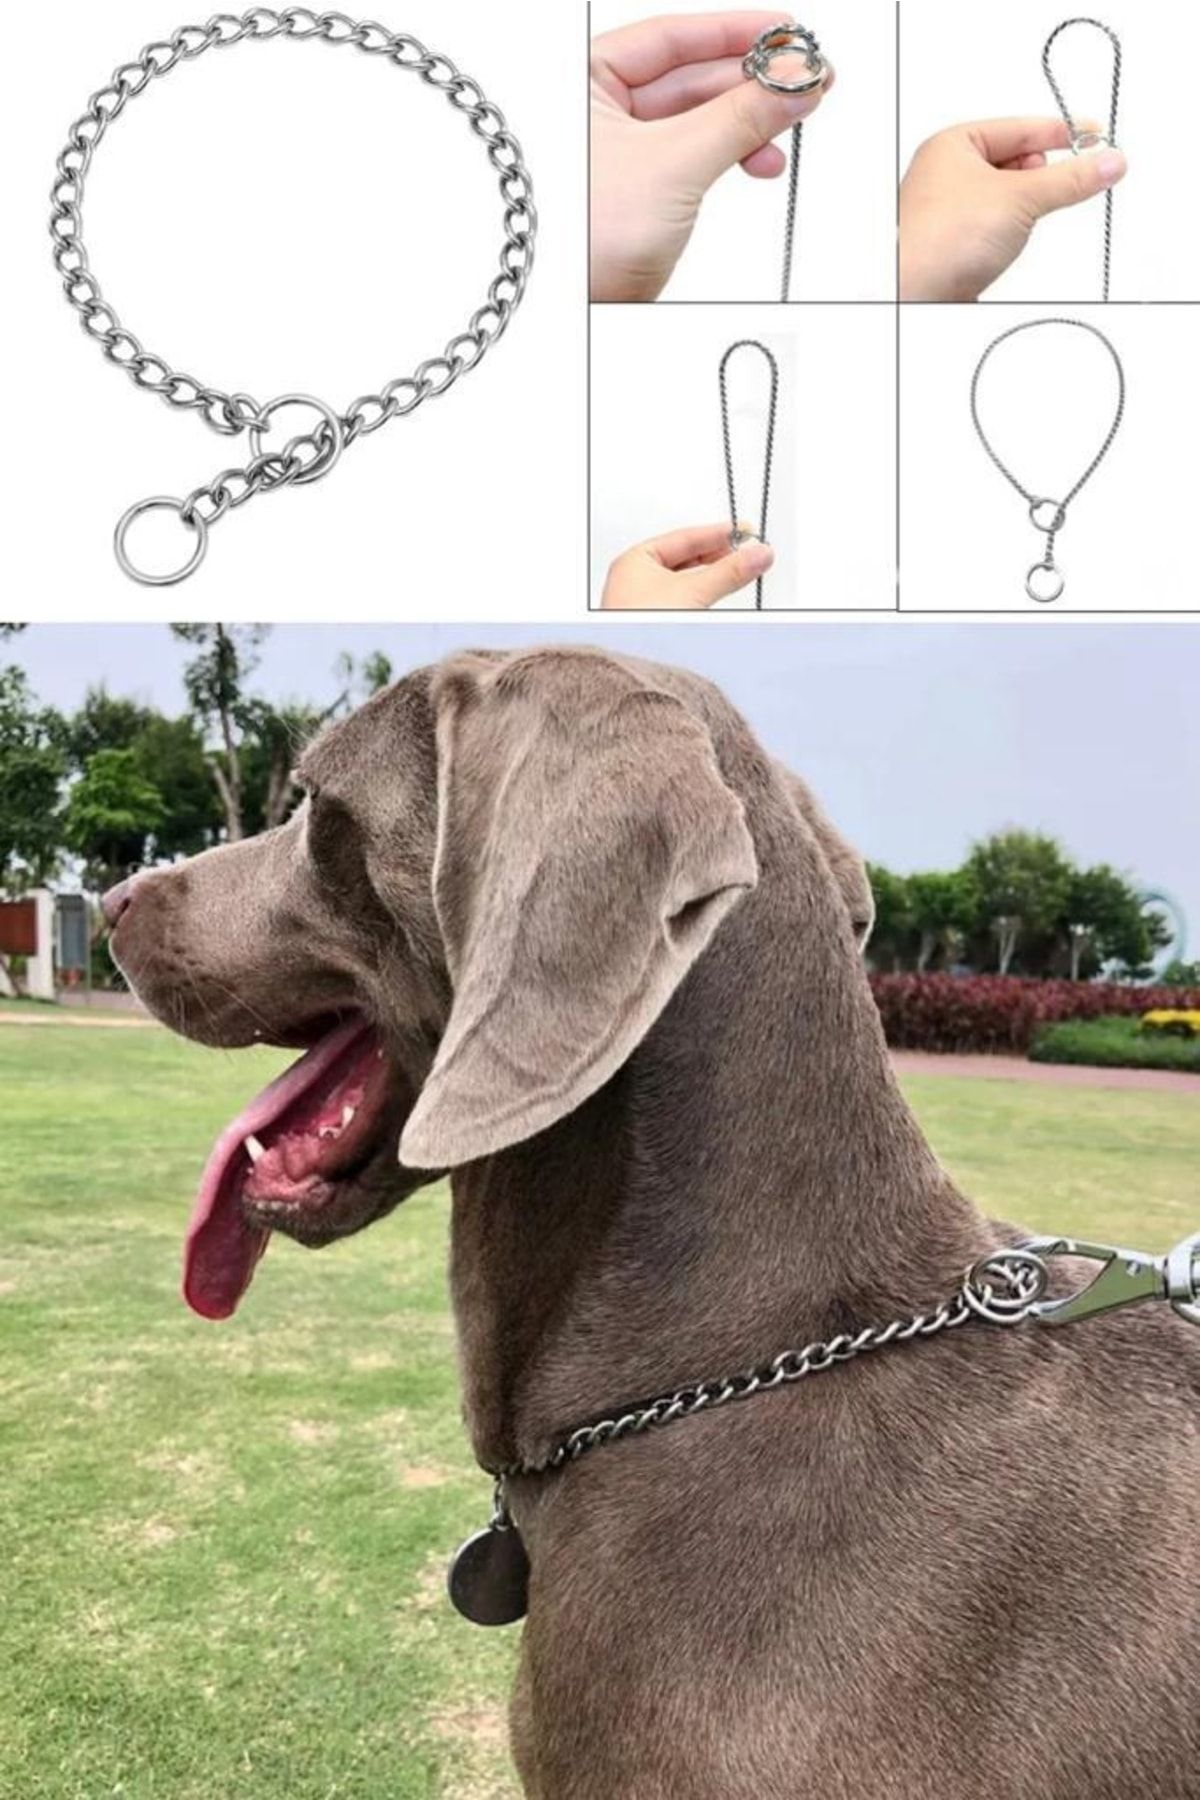 Utelips 65 Cm Dayanıklı Ve Güçlü Metal Zincir Köpek Tasmaları Eğitim Tasması Figürlü Dogo Pitbull Golden Dog